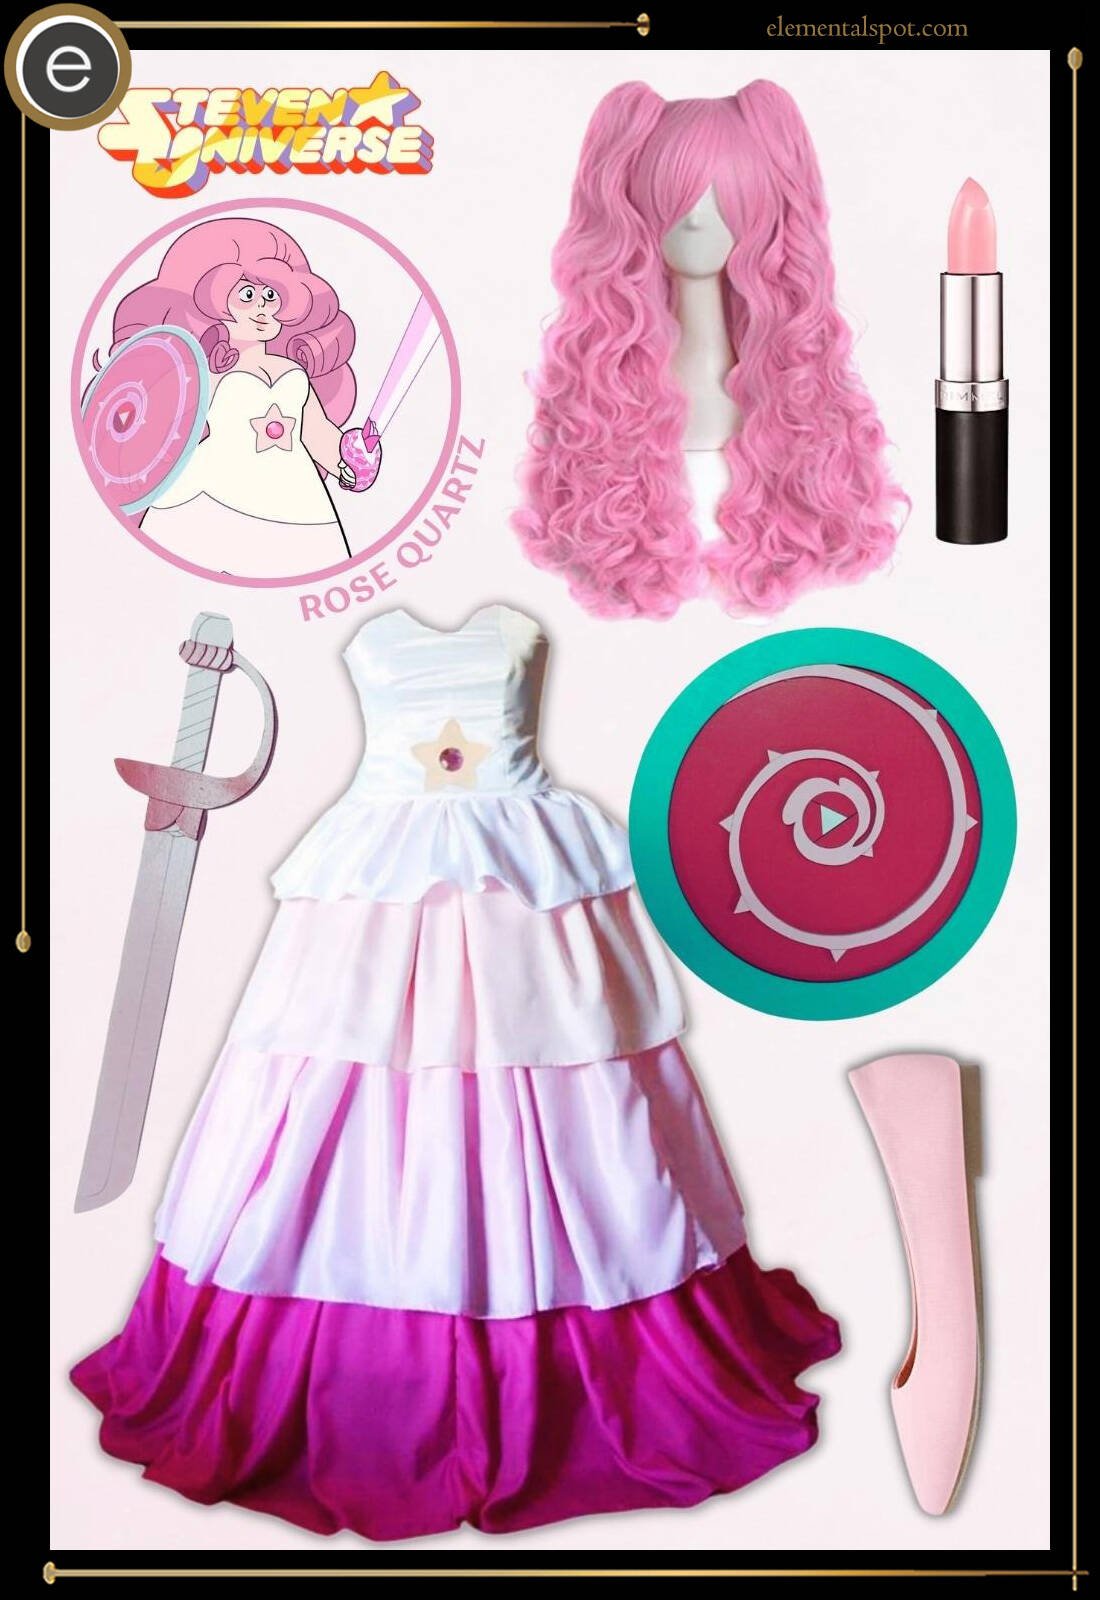 rose-quartz-steven-universe-costume-outfit-inspo